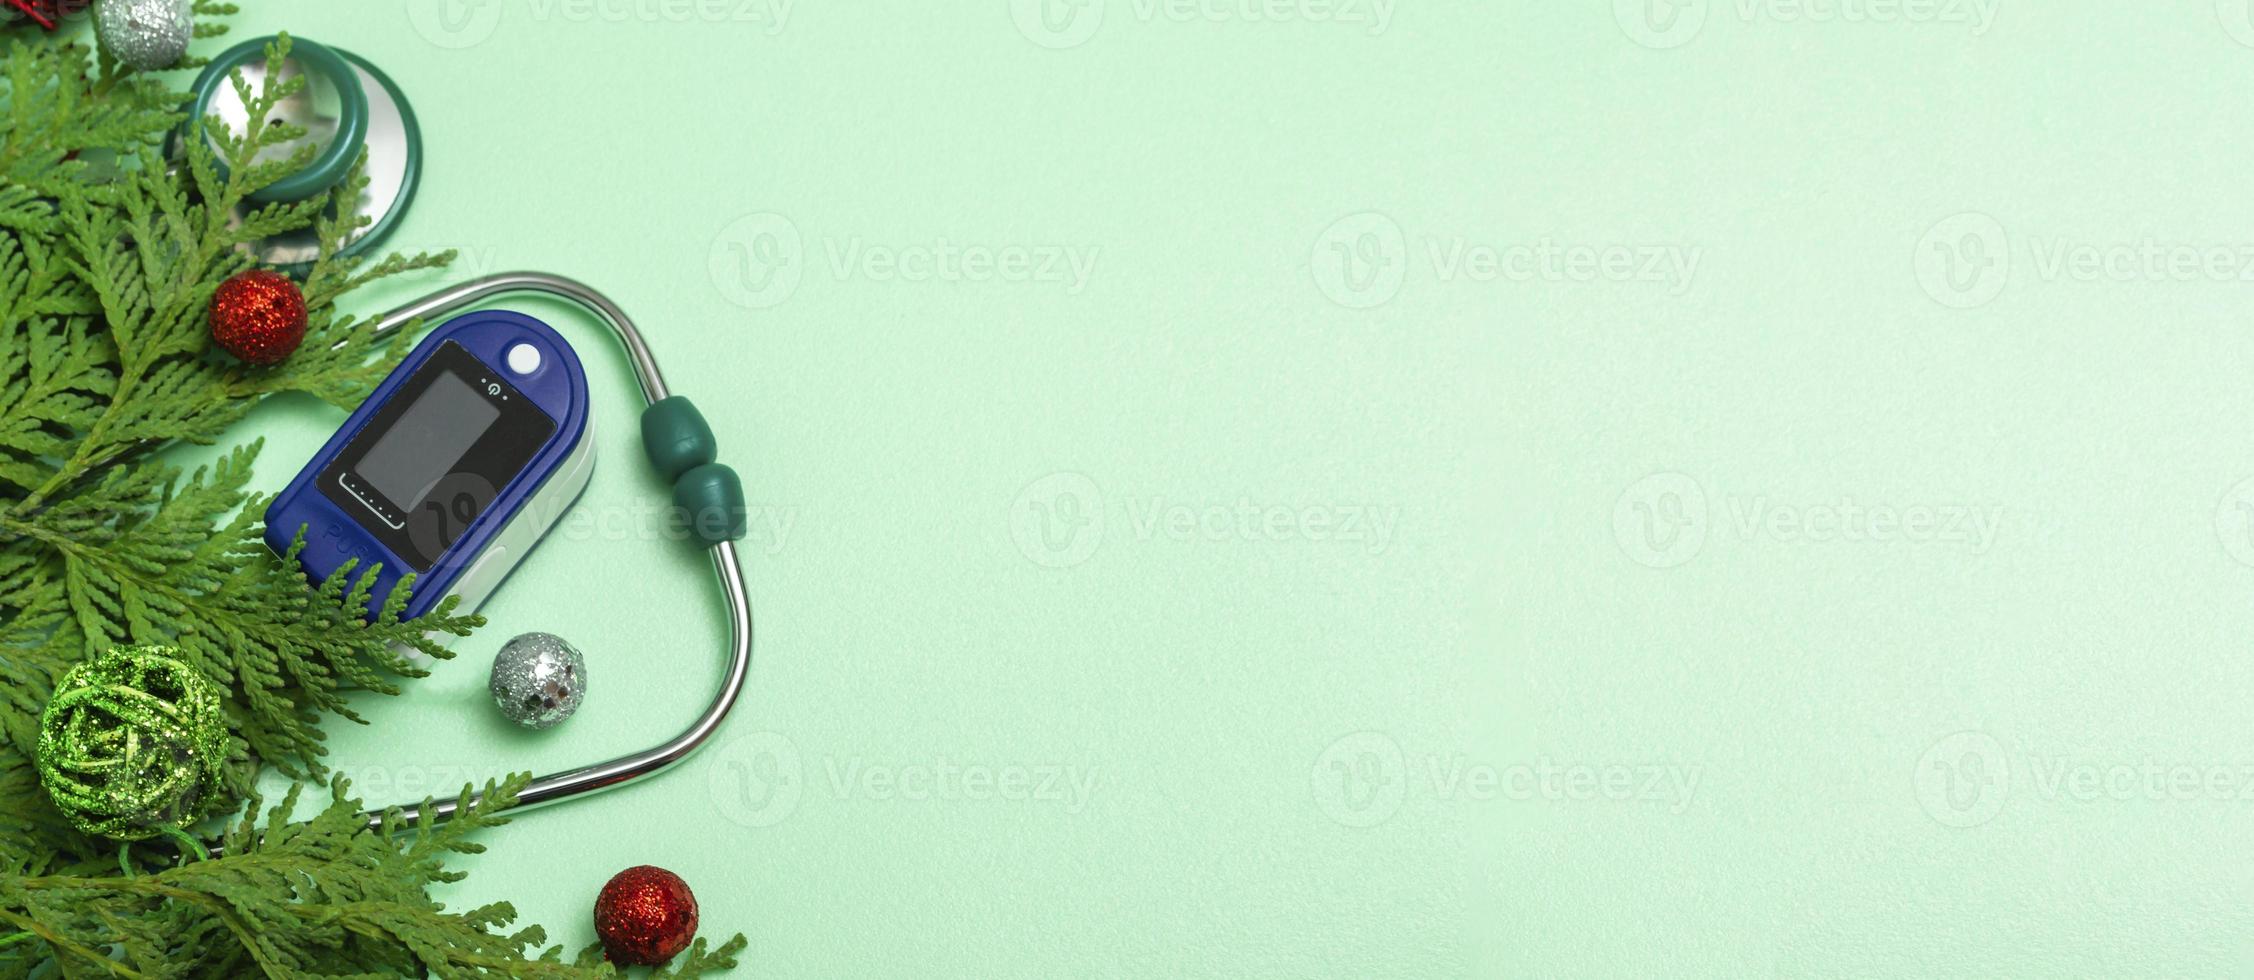 medisch concept dat Kerstmis viert in de gezondheidszorg. bovenaanzicht van een platliggende close-up van een stethoscoop, pulsoximeter met dennentakken op een groene achtergrond. kopieer ruimte foto